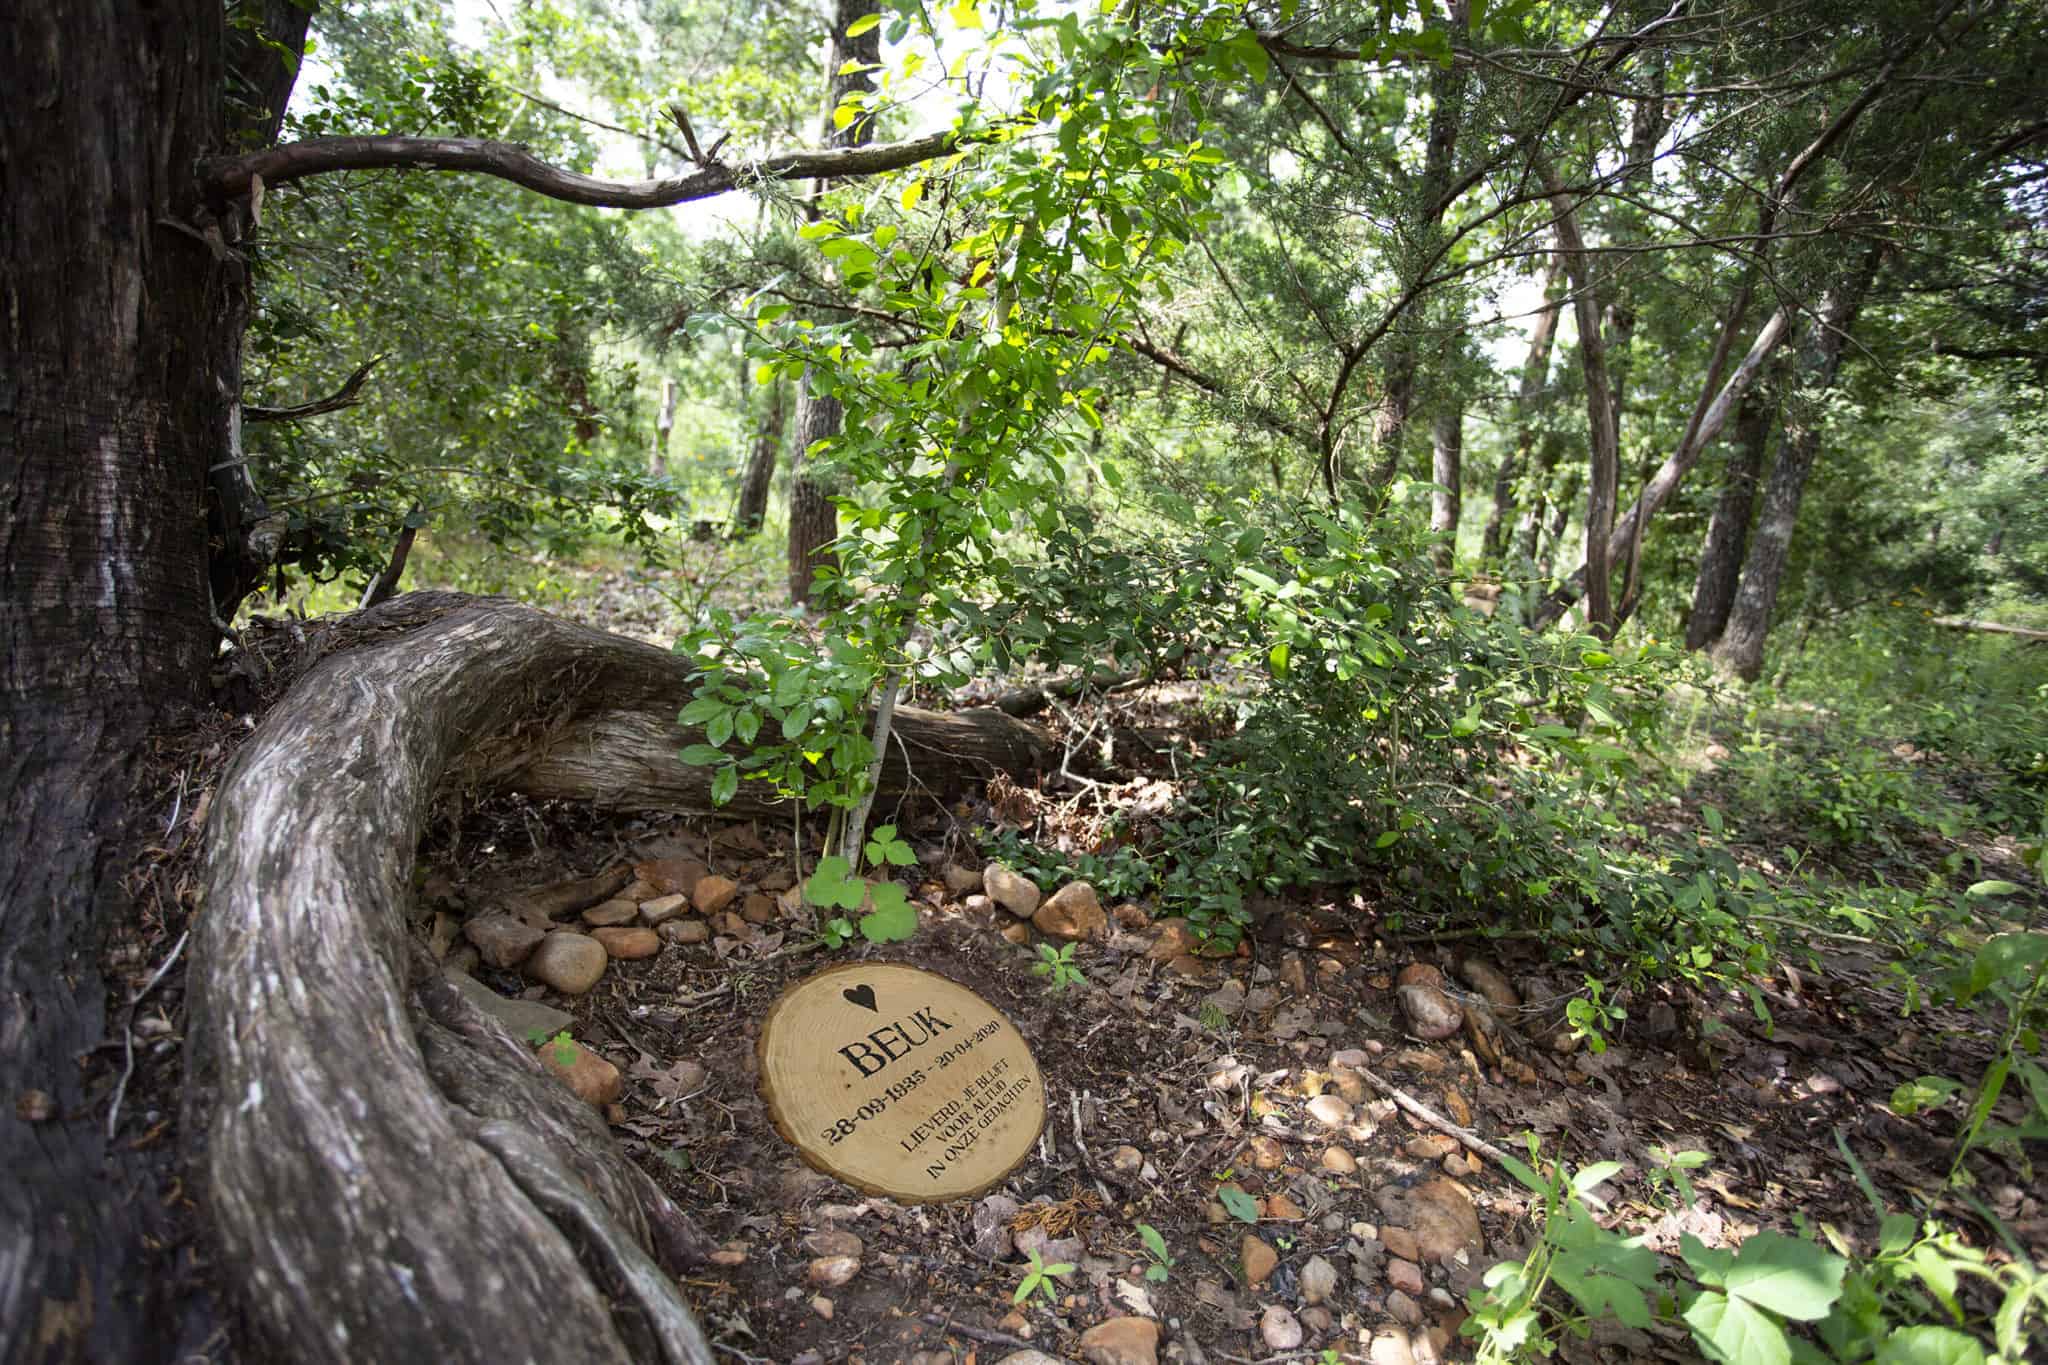 Natuurgraf in het bos met houten gedenkschijf